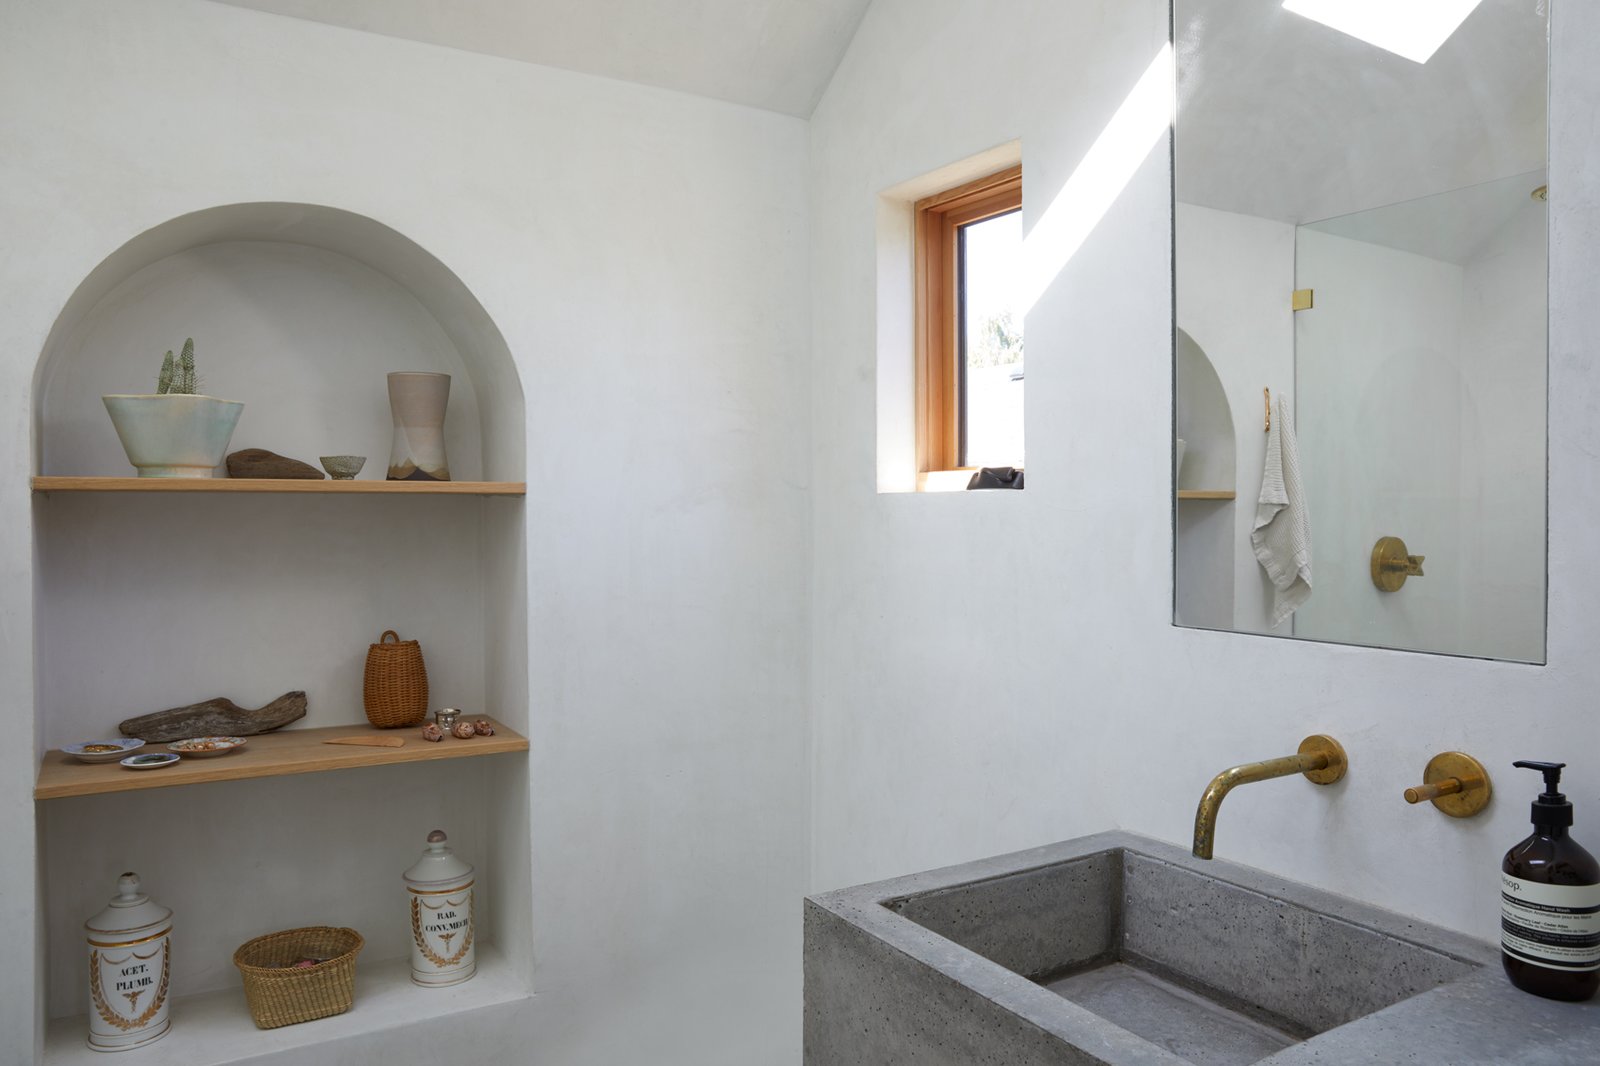 35 Concrete Bathroom Designs Polished Concrete Floors And Tile Ideas